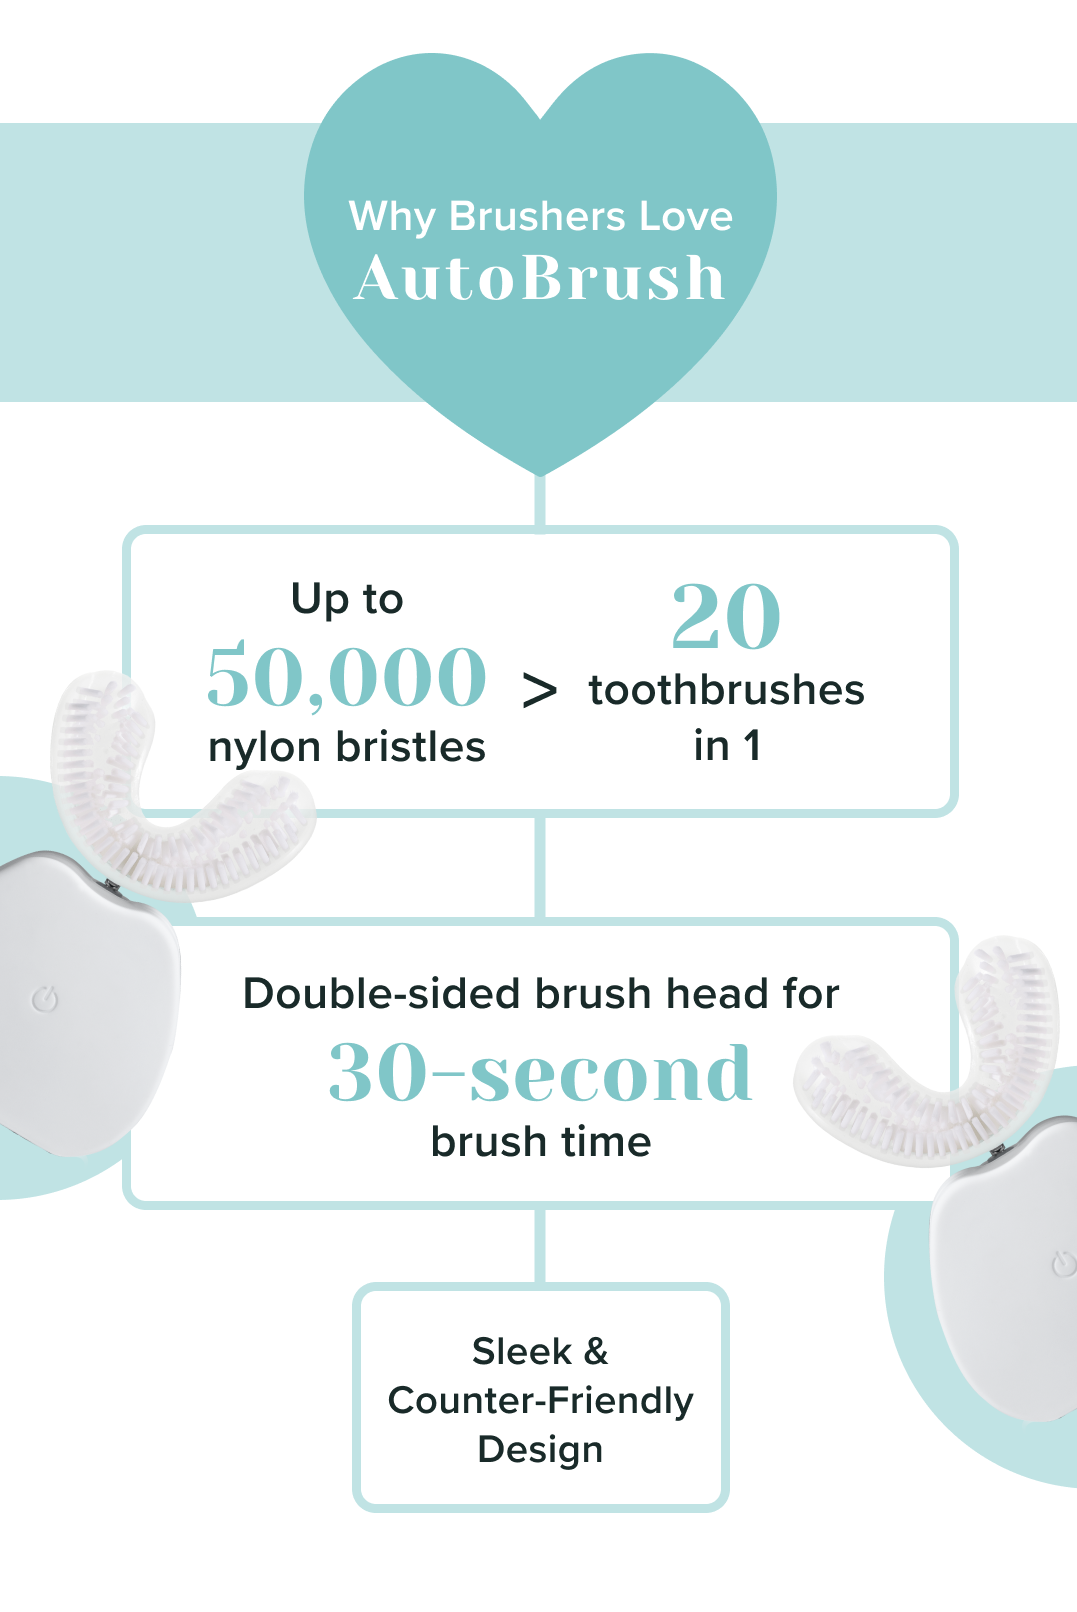 Why Brushers love AutoBrush